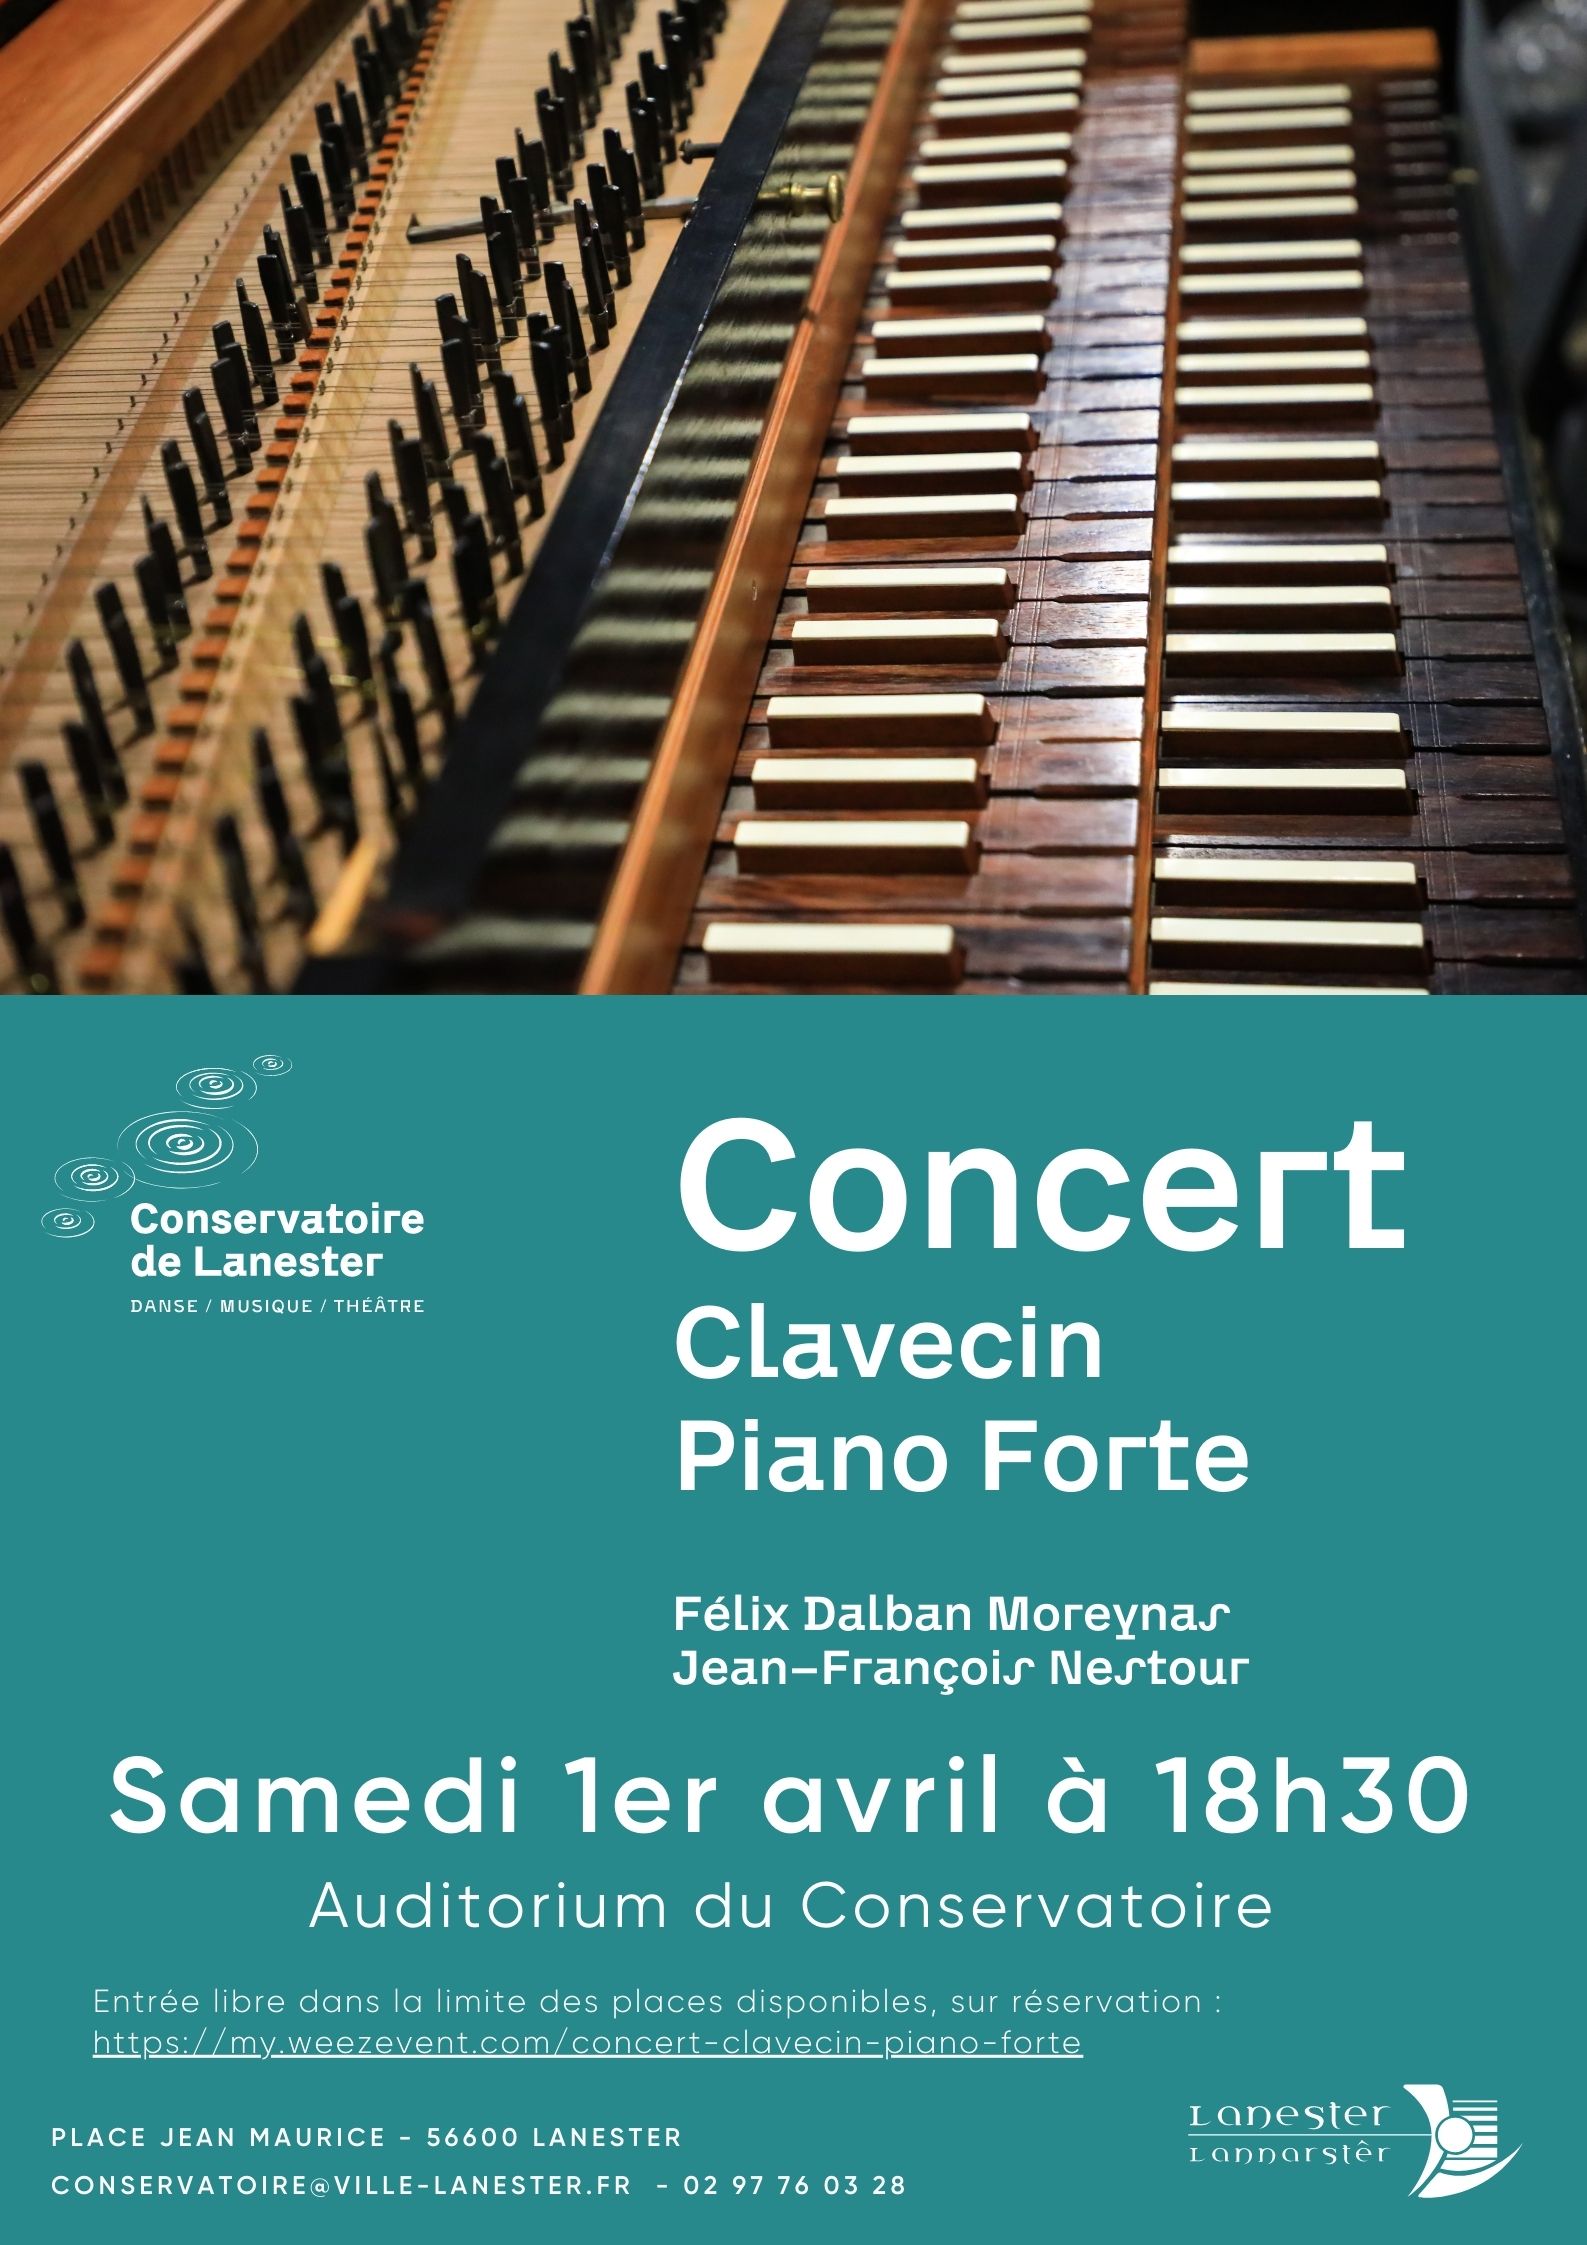 Concert clavecin conservatoire Lanester